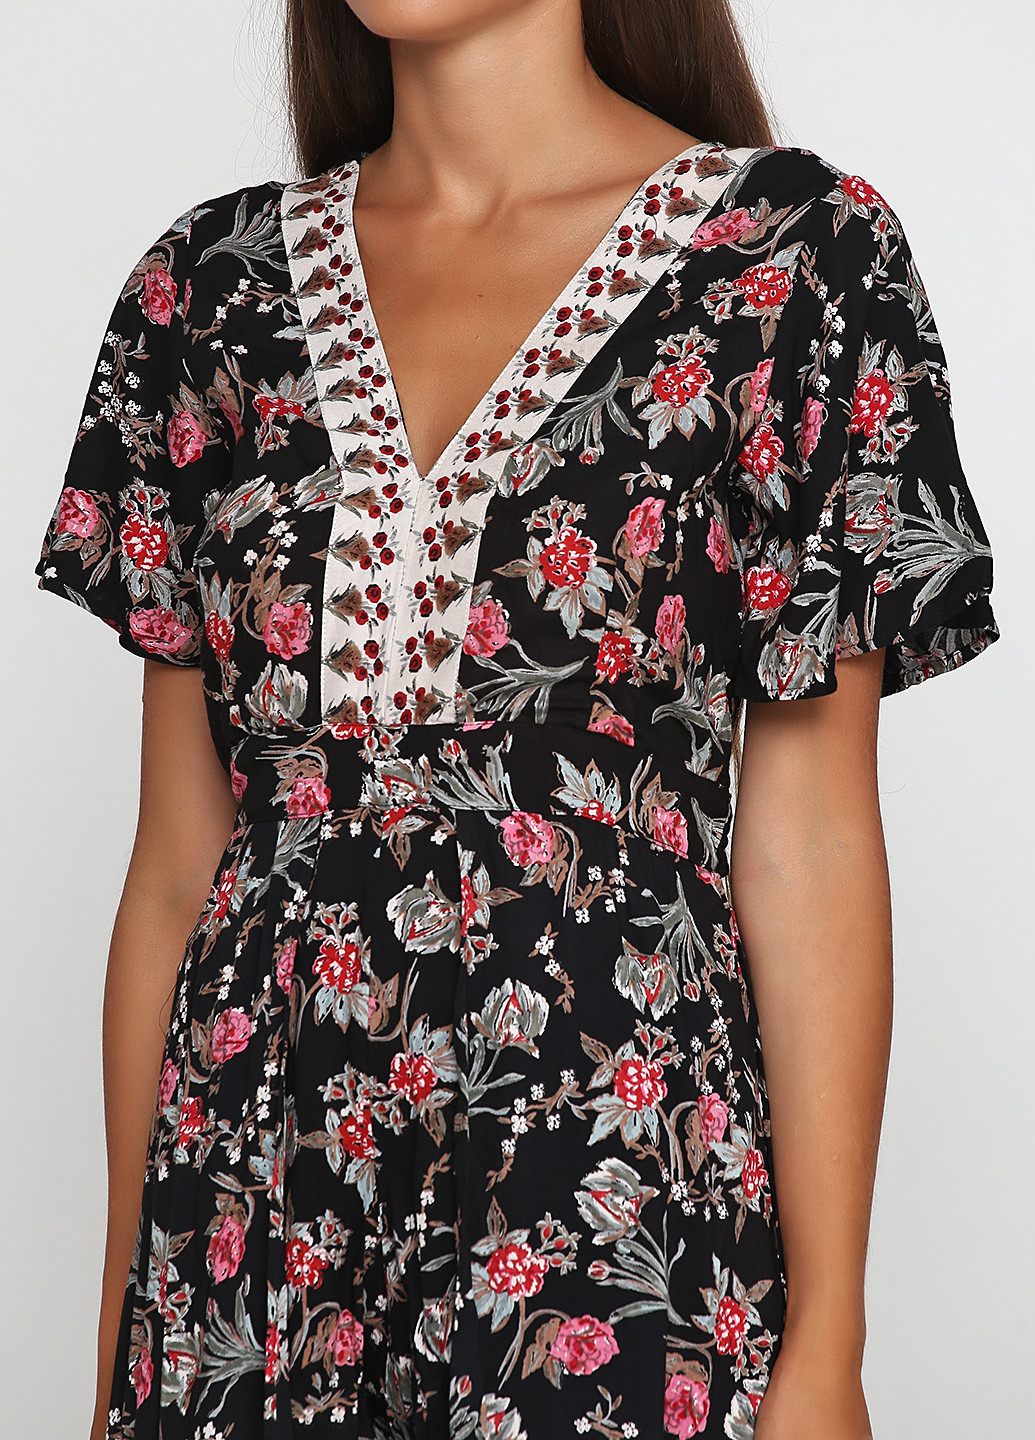 Комбинезон Miami by Francesca`s комбинезон-шорты цветочный чёрный кэжуал